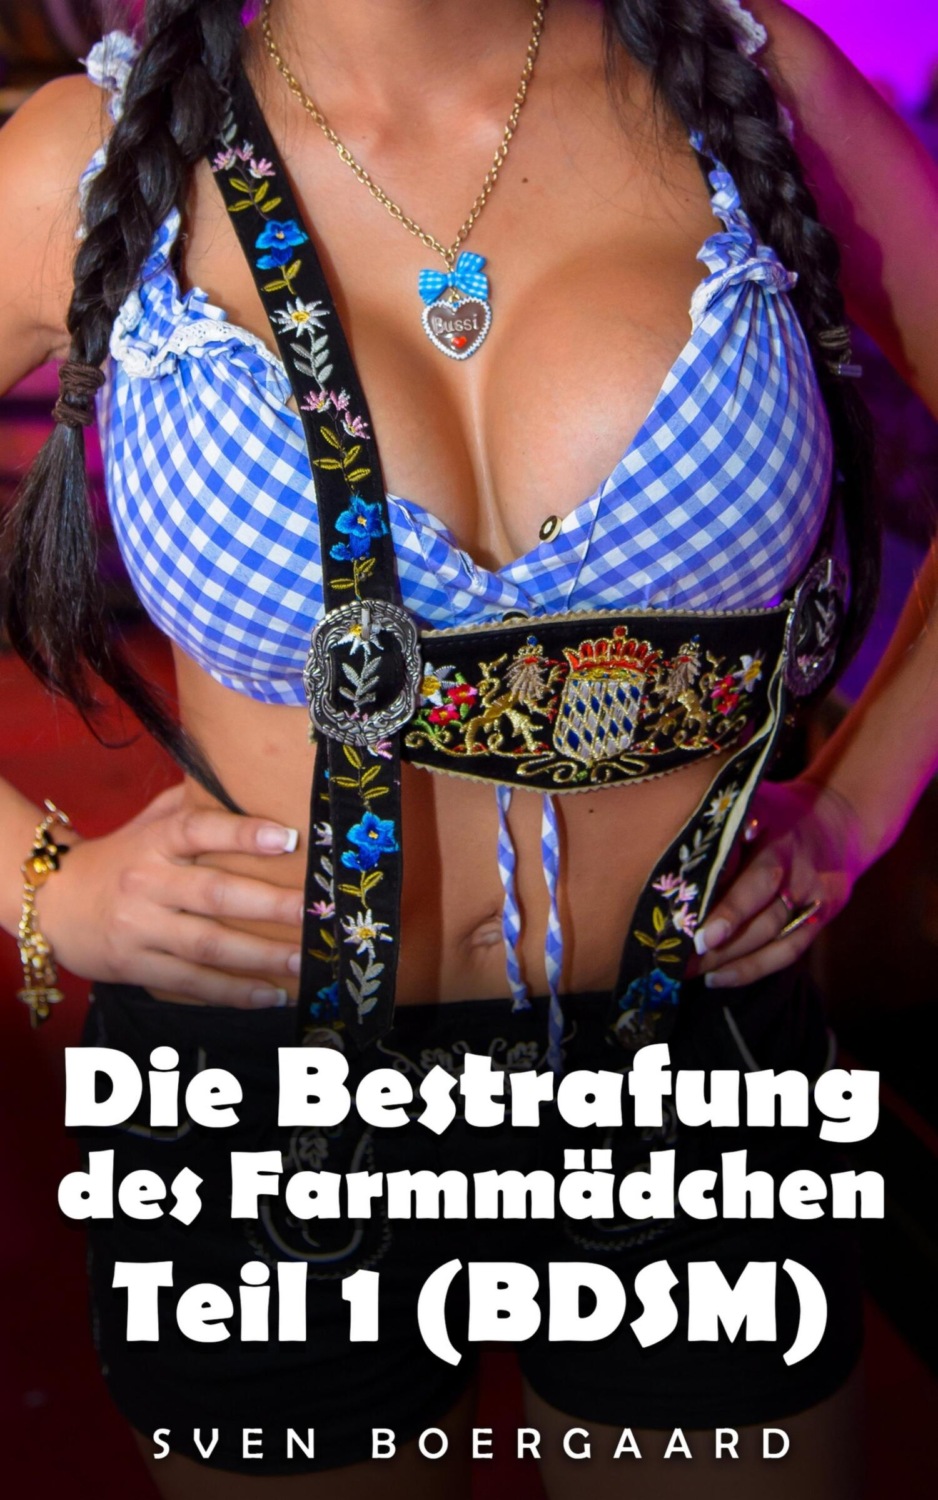 Die Bestrafung des Farmmädchen - Teil 1 (BDSM), Sven Boergaard – скачать книгу fb2, epub, pdf на Литрес